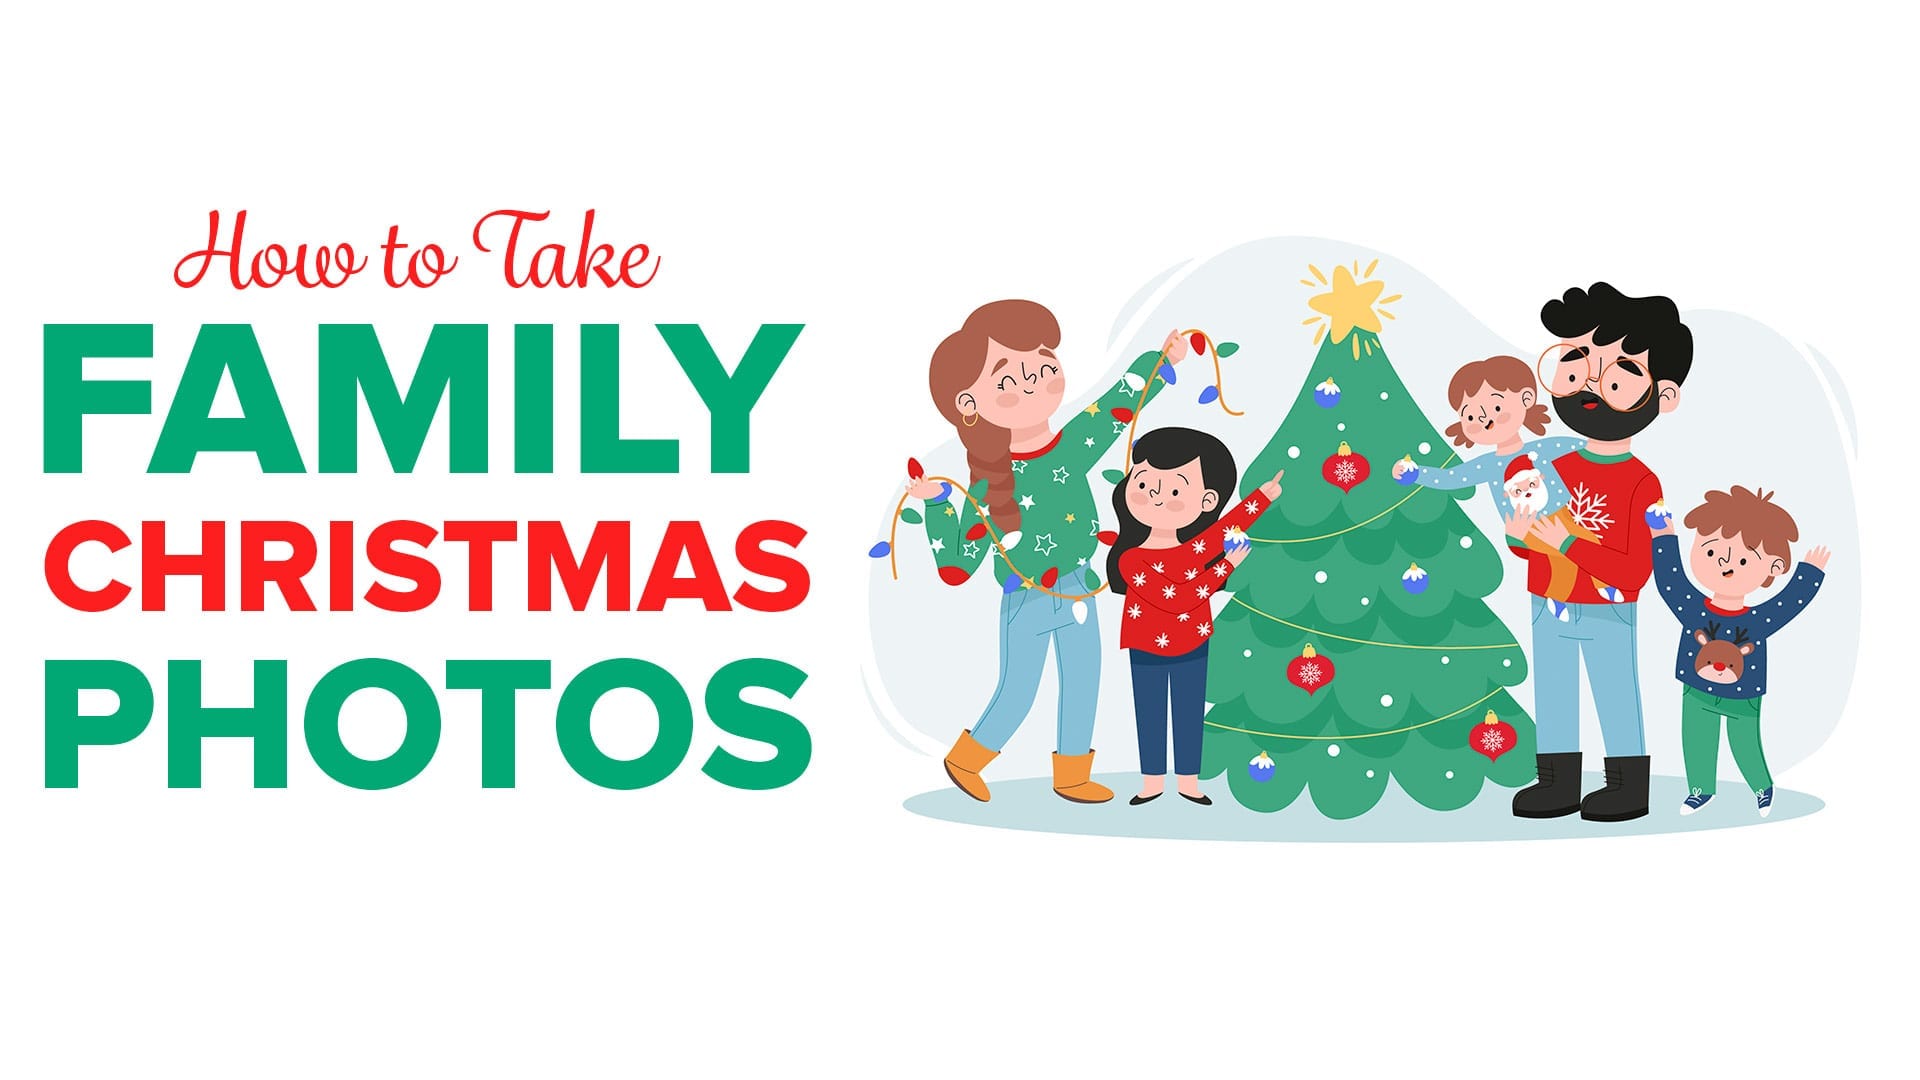 How to Take Family Christmas Photos